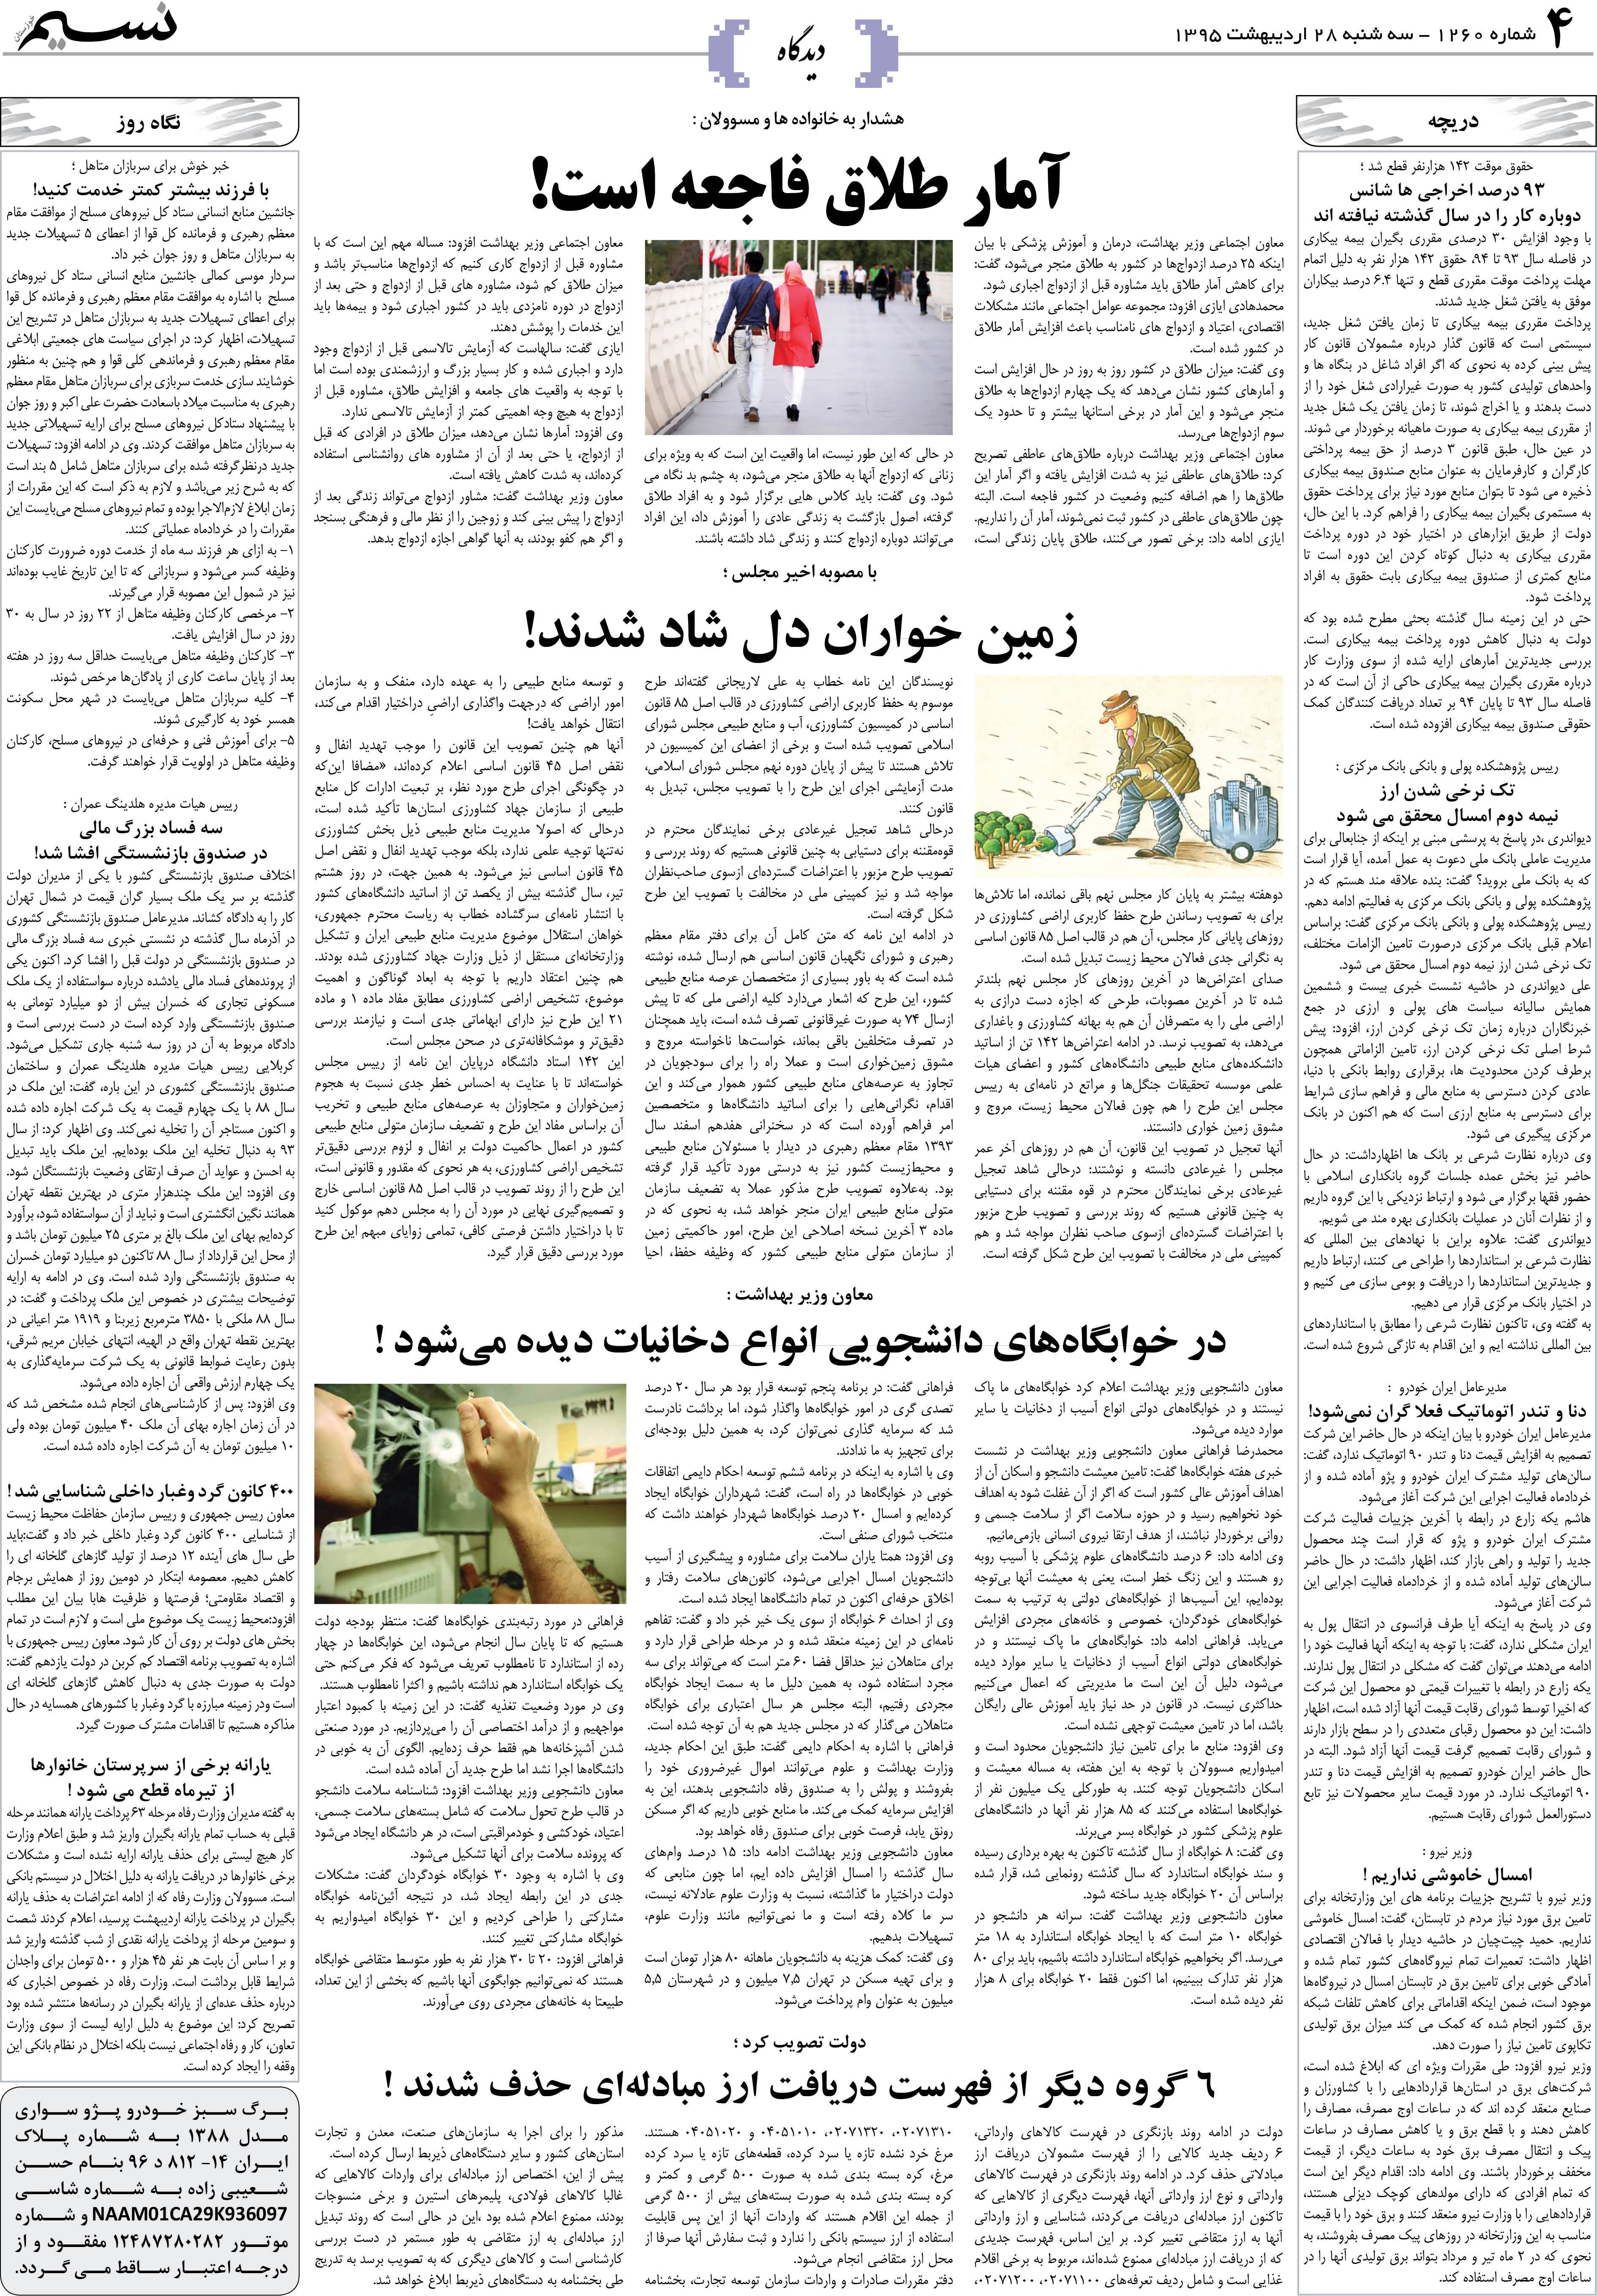 صفحه دیدگاه روزنامه نسیم شماره 1260